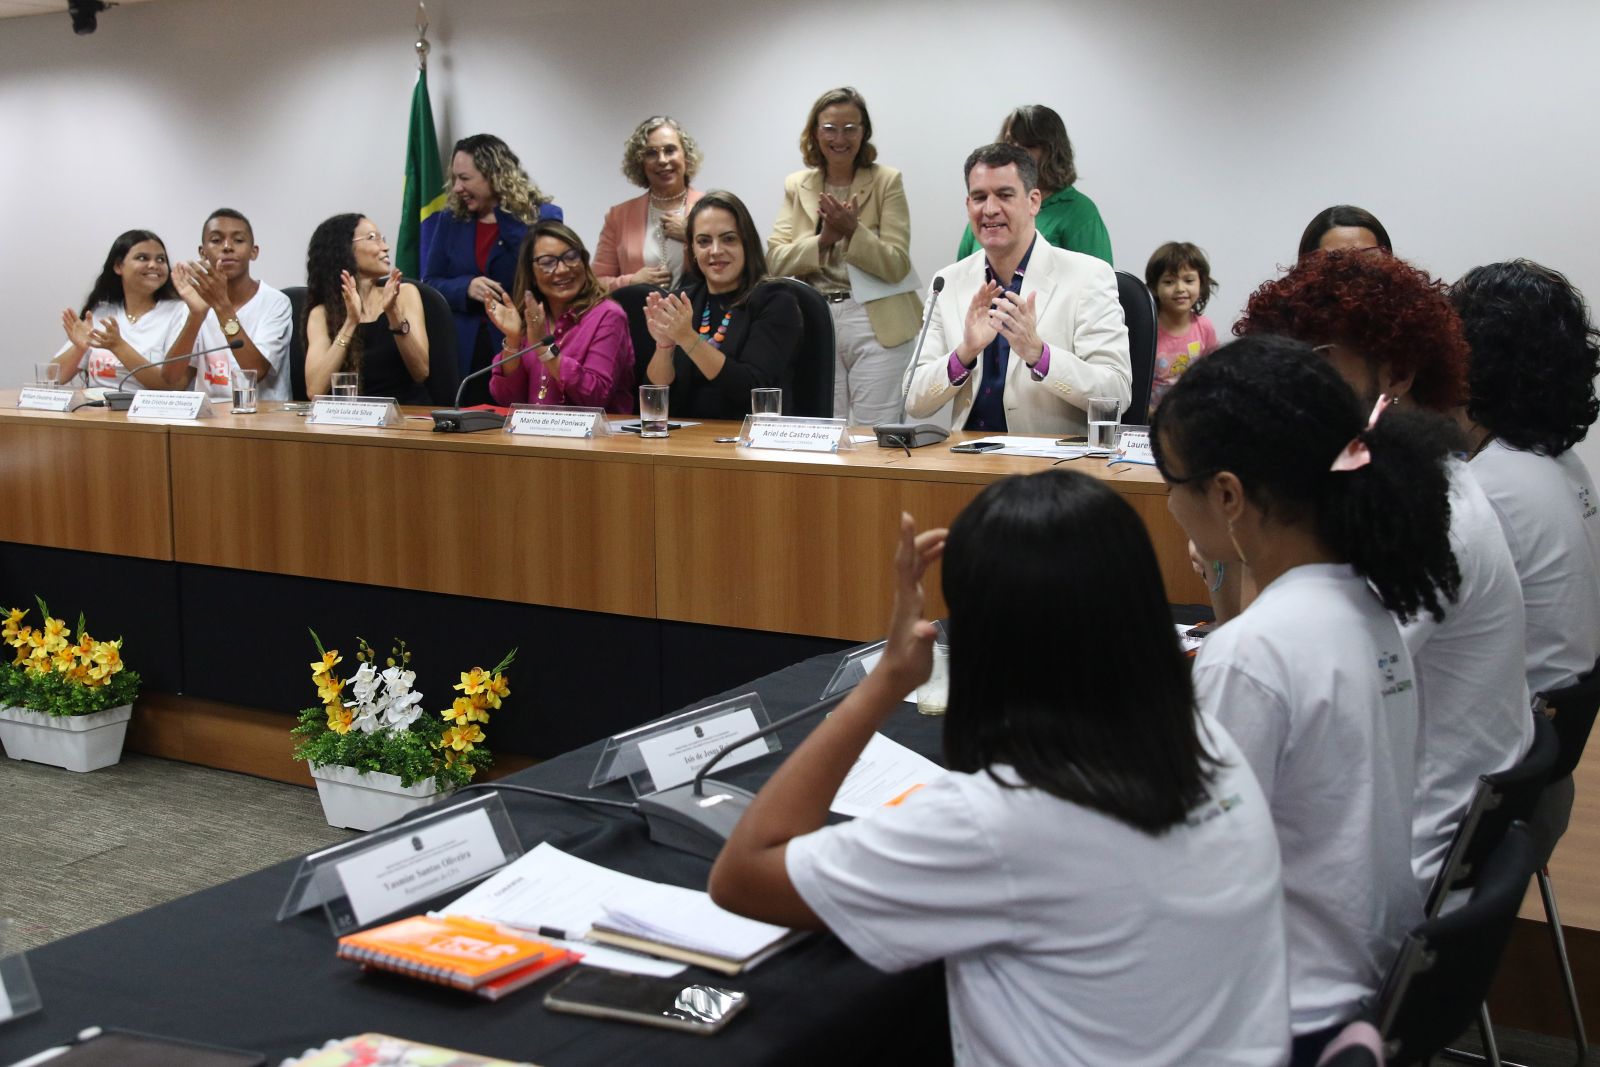 Foto: Antônio Cruz/Agência Brasil – A primeira-dama Janja Lula da Silva participa da abertura da 313ª Assembleia Ordinária do Conselho Nacional dos Direitos da Criança e do Adolescente (Conanda)